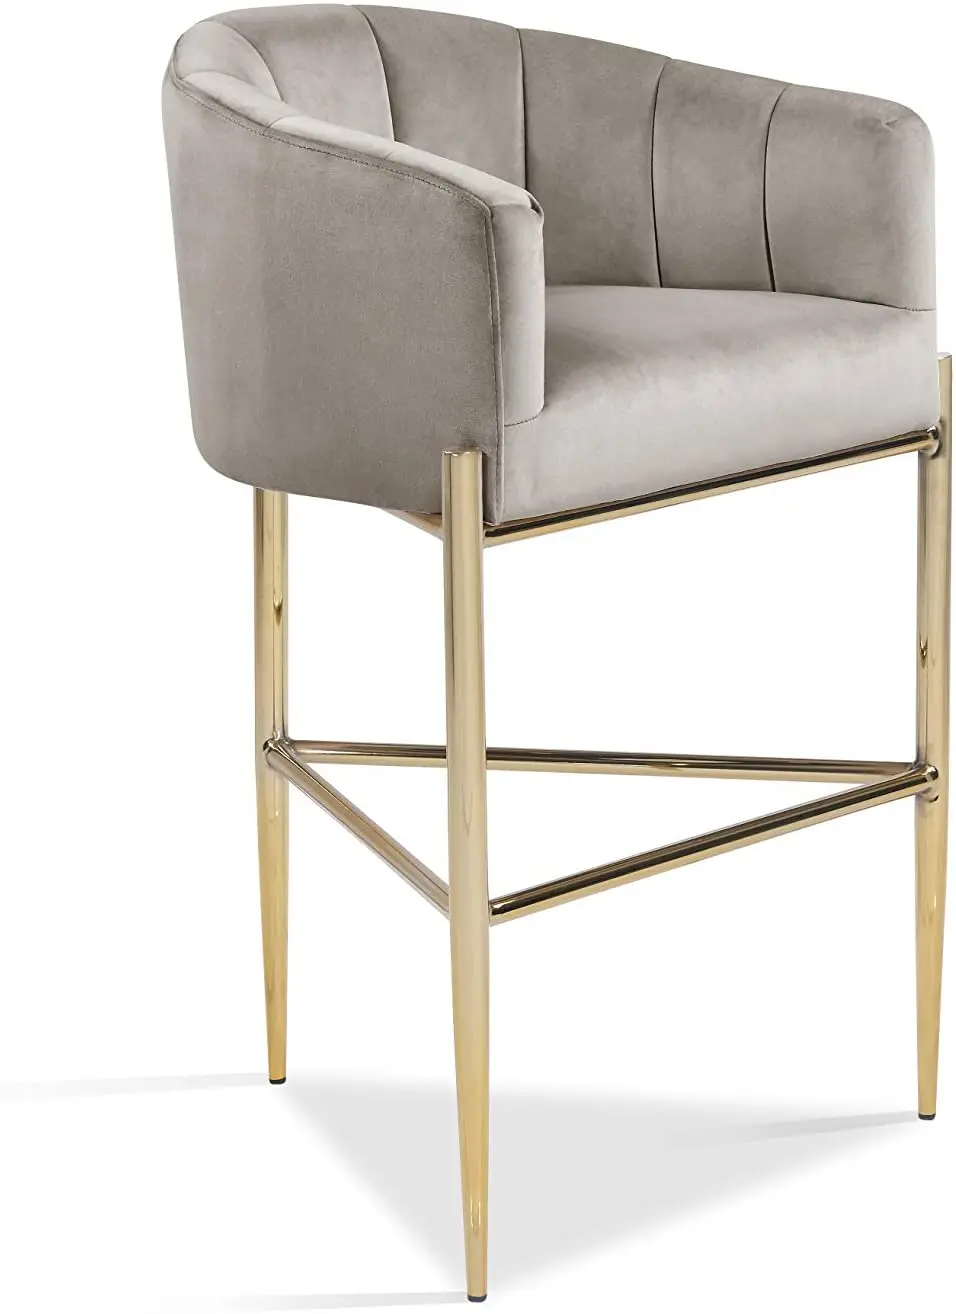 Chinafurniture bar stolček žamet oblazinjeno kritje roko shell design 3 noge zlata barva kovinsko bazo mornarsko modra